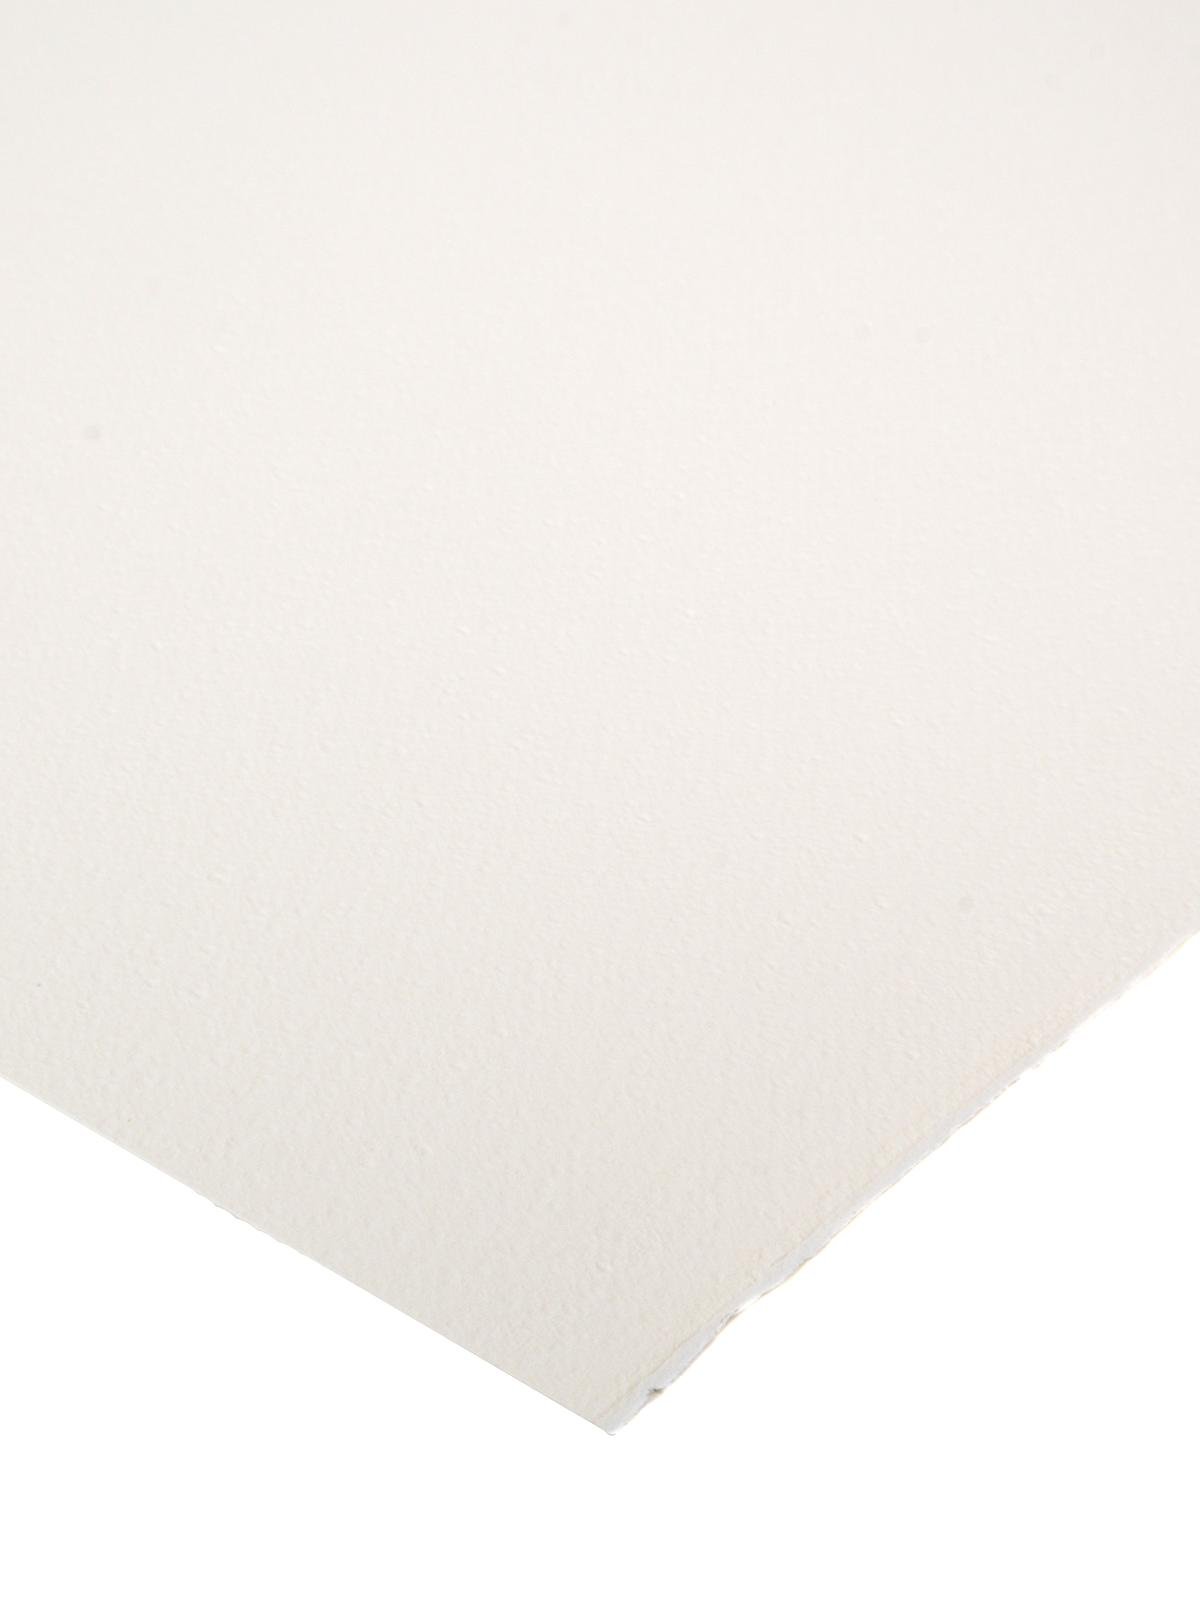 Fabriano : Artistico Paper Sheets : 22 x 30 in